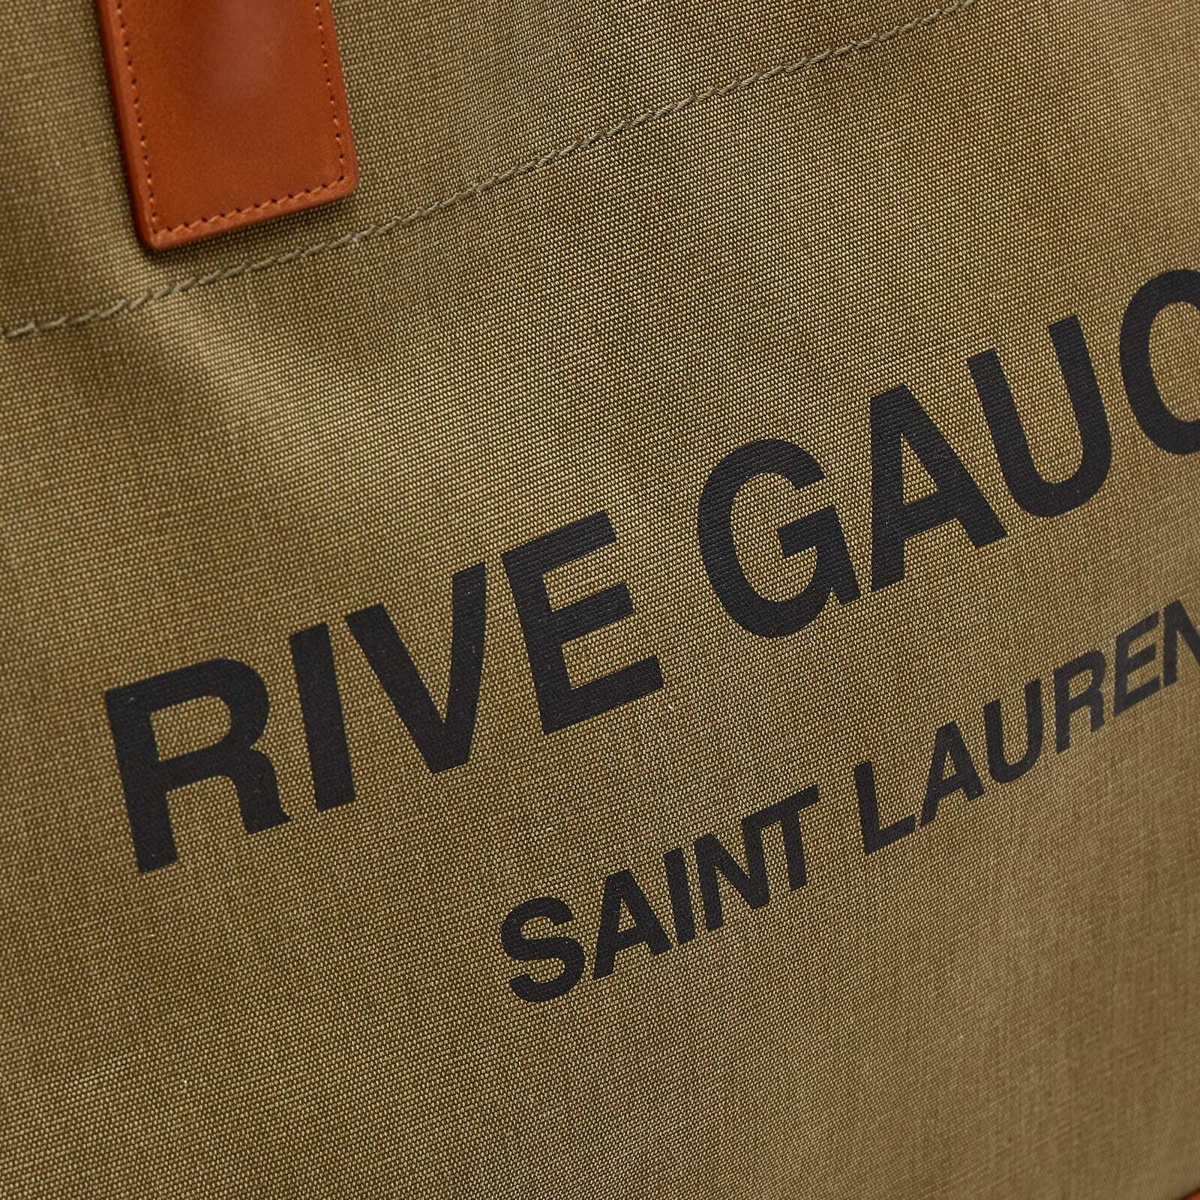 Saint Laurent Men's Rive Gauche Leather Tote